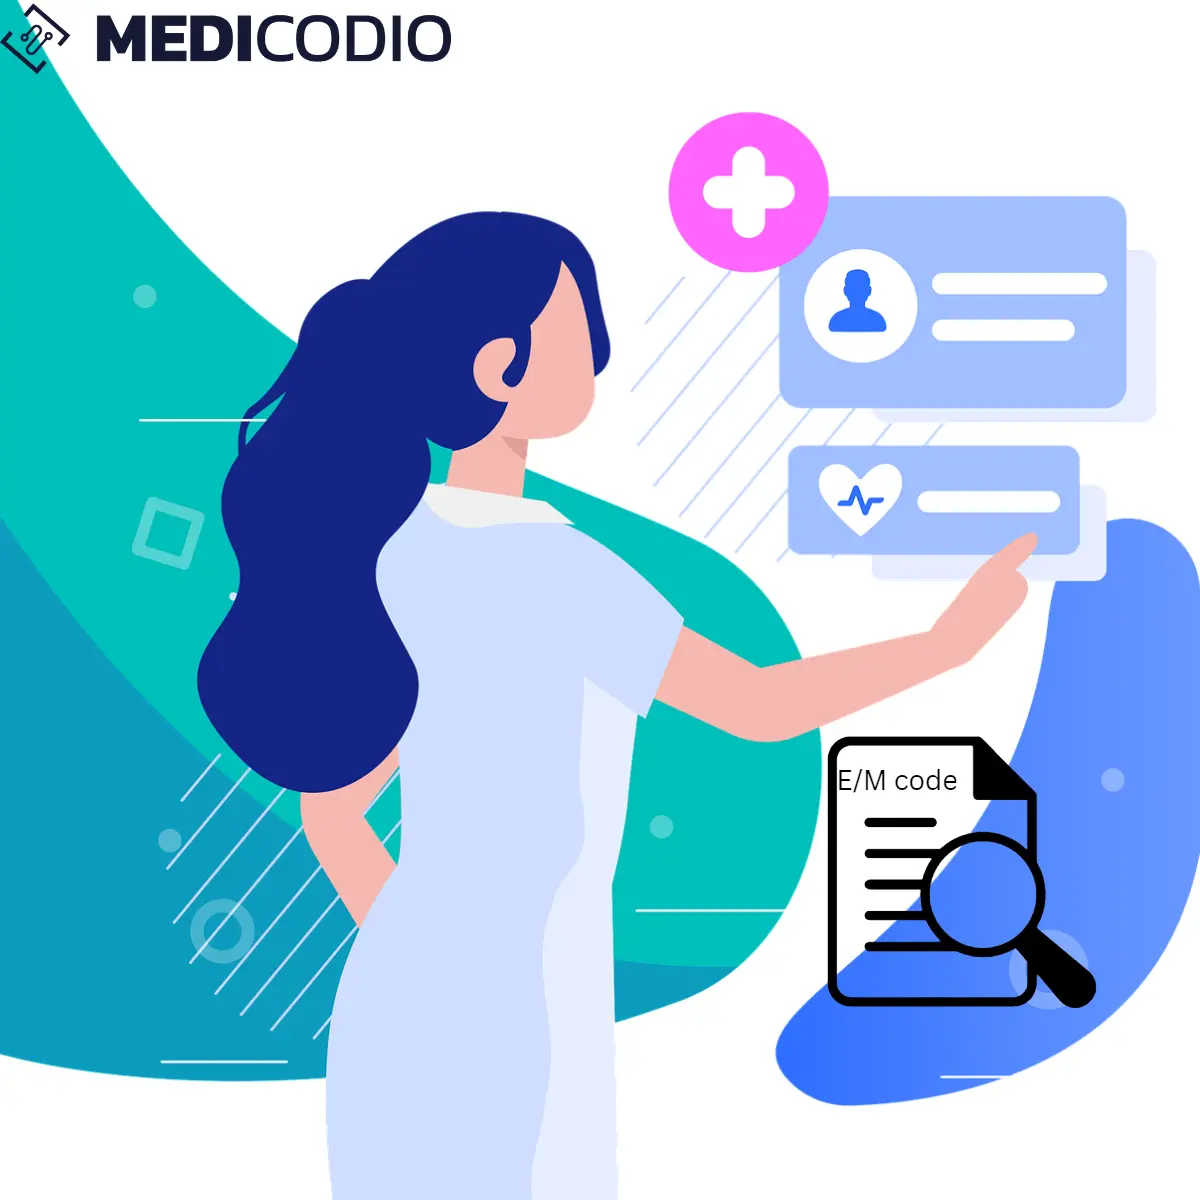 Simplify E/M Coding Complexities with Medicodio | Medicodio.com